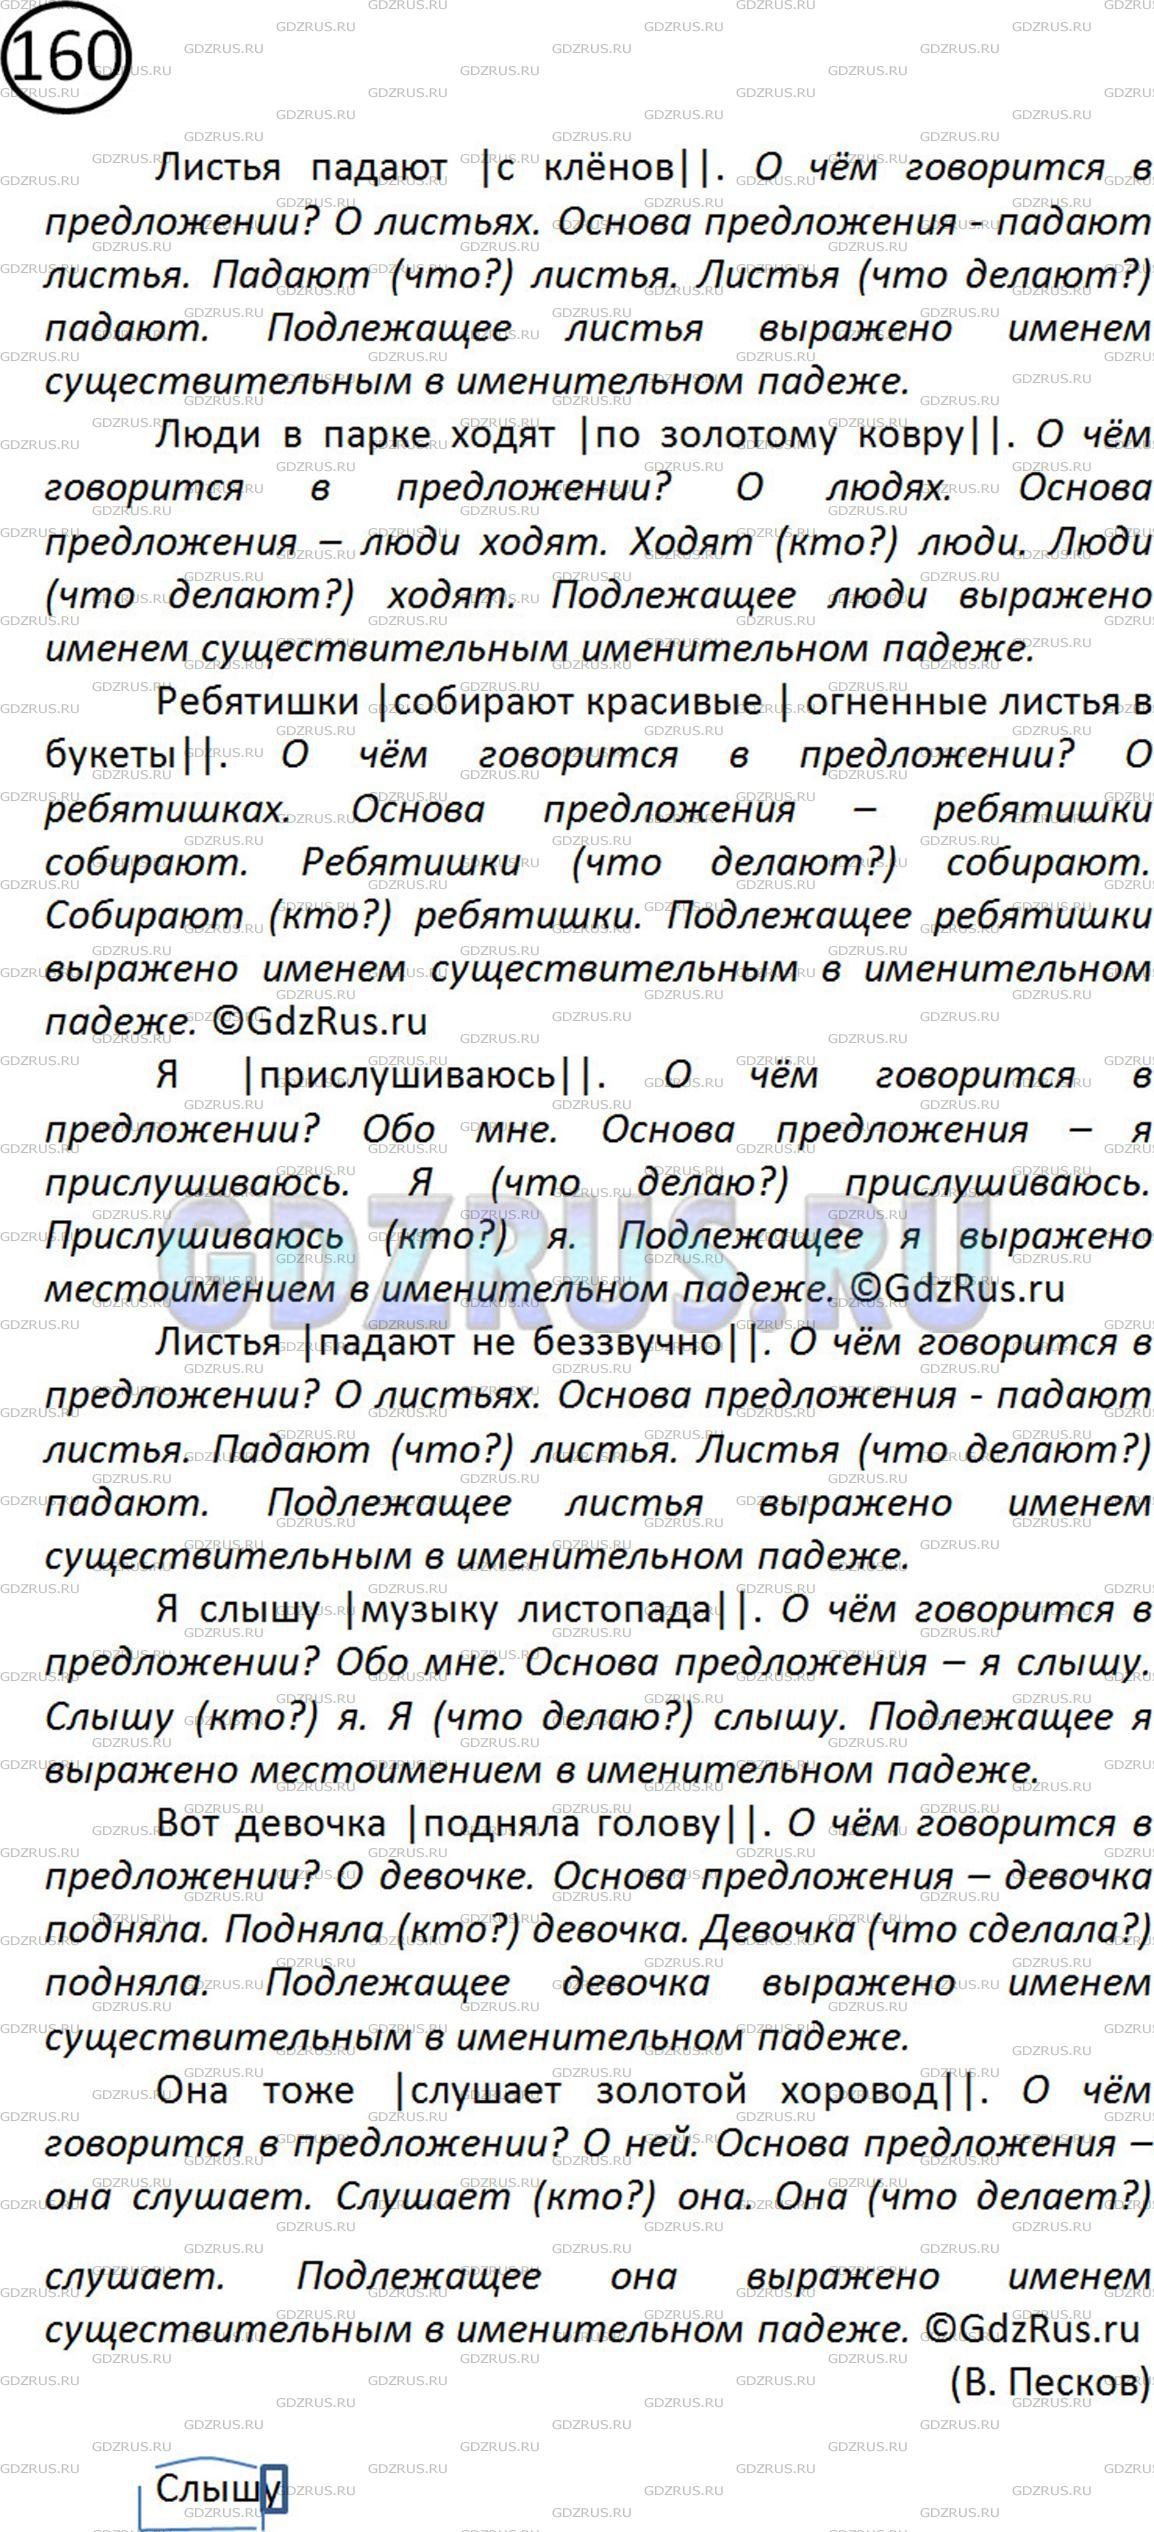 Фото решения 2: Номер №160 из ГДЗ по Русскому языку 5 класс: Ладыженская Т.А. 2012г.